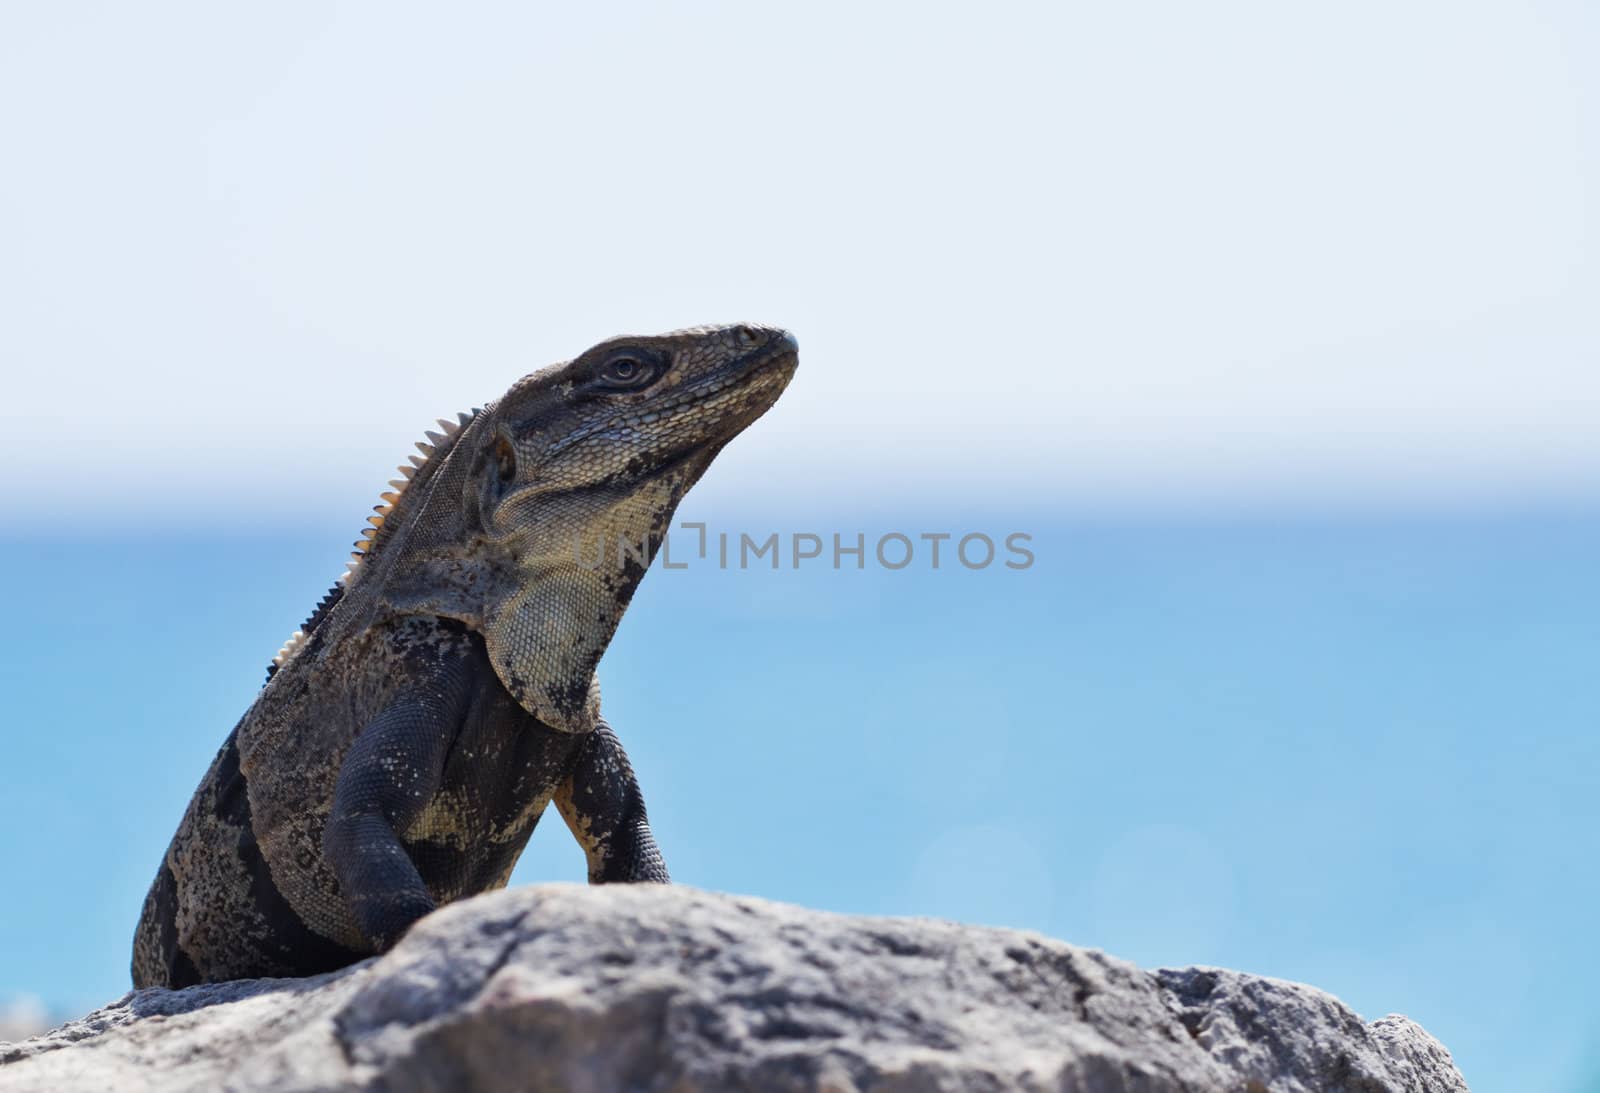 Mexican Iguana by MojoJojoFoto